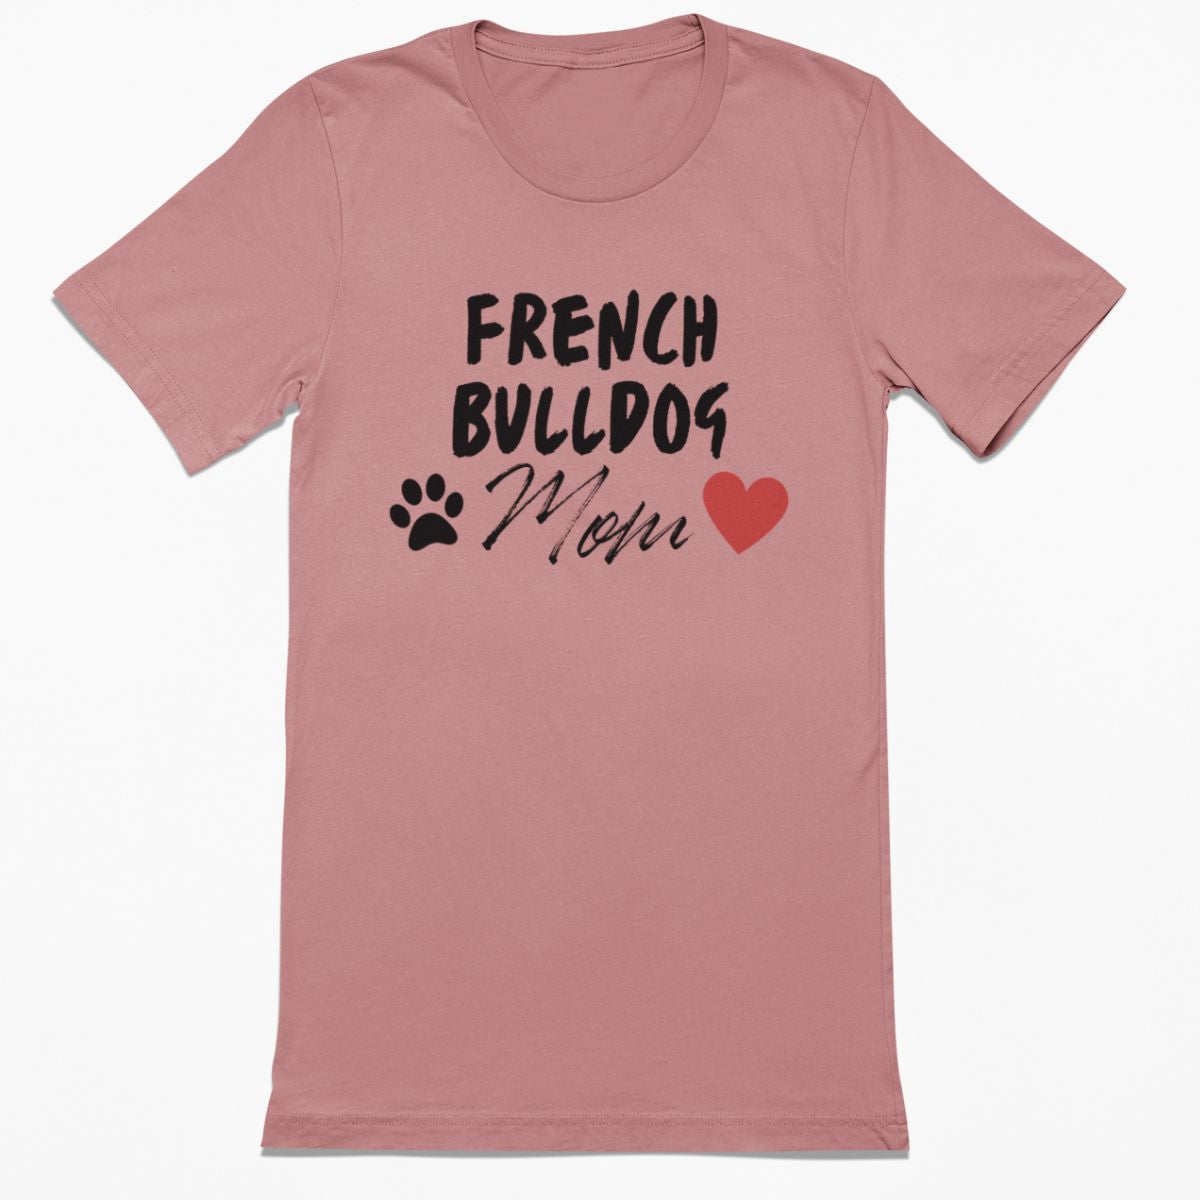 French Bulldog Mom Shirt